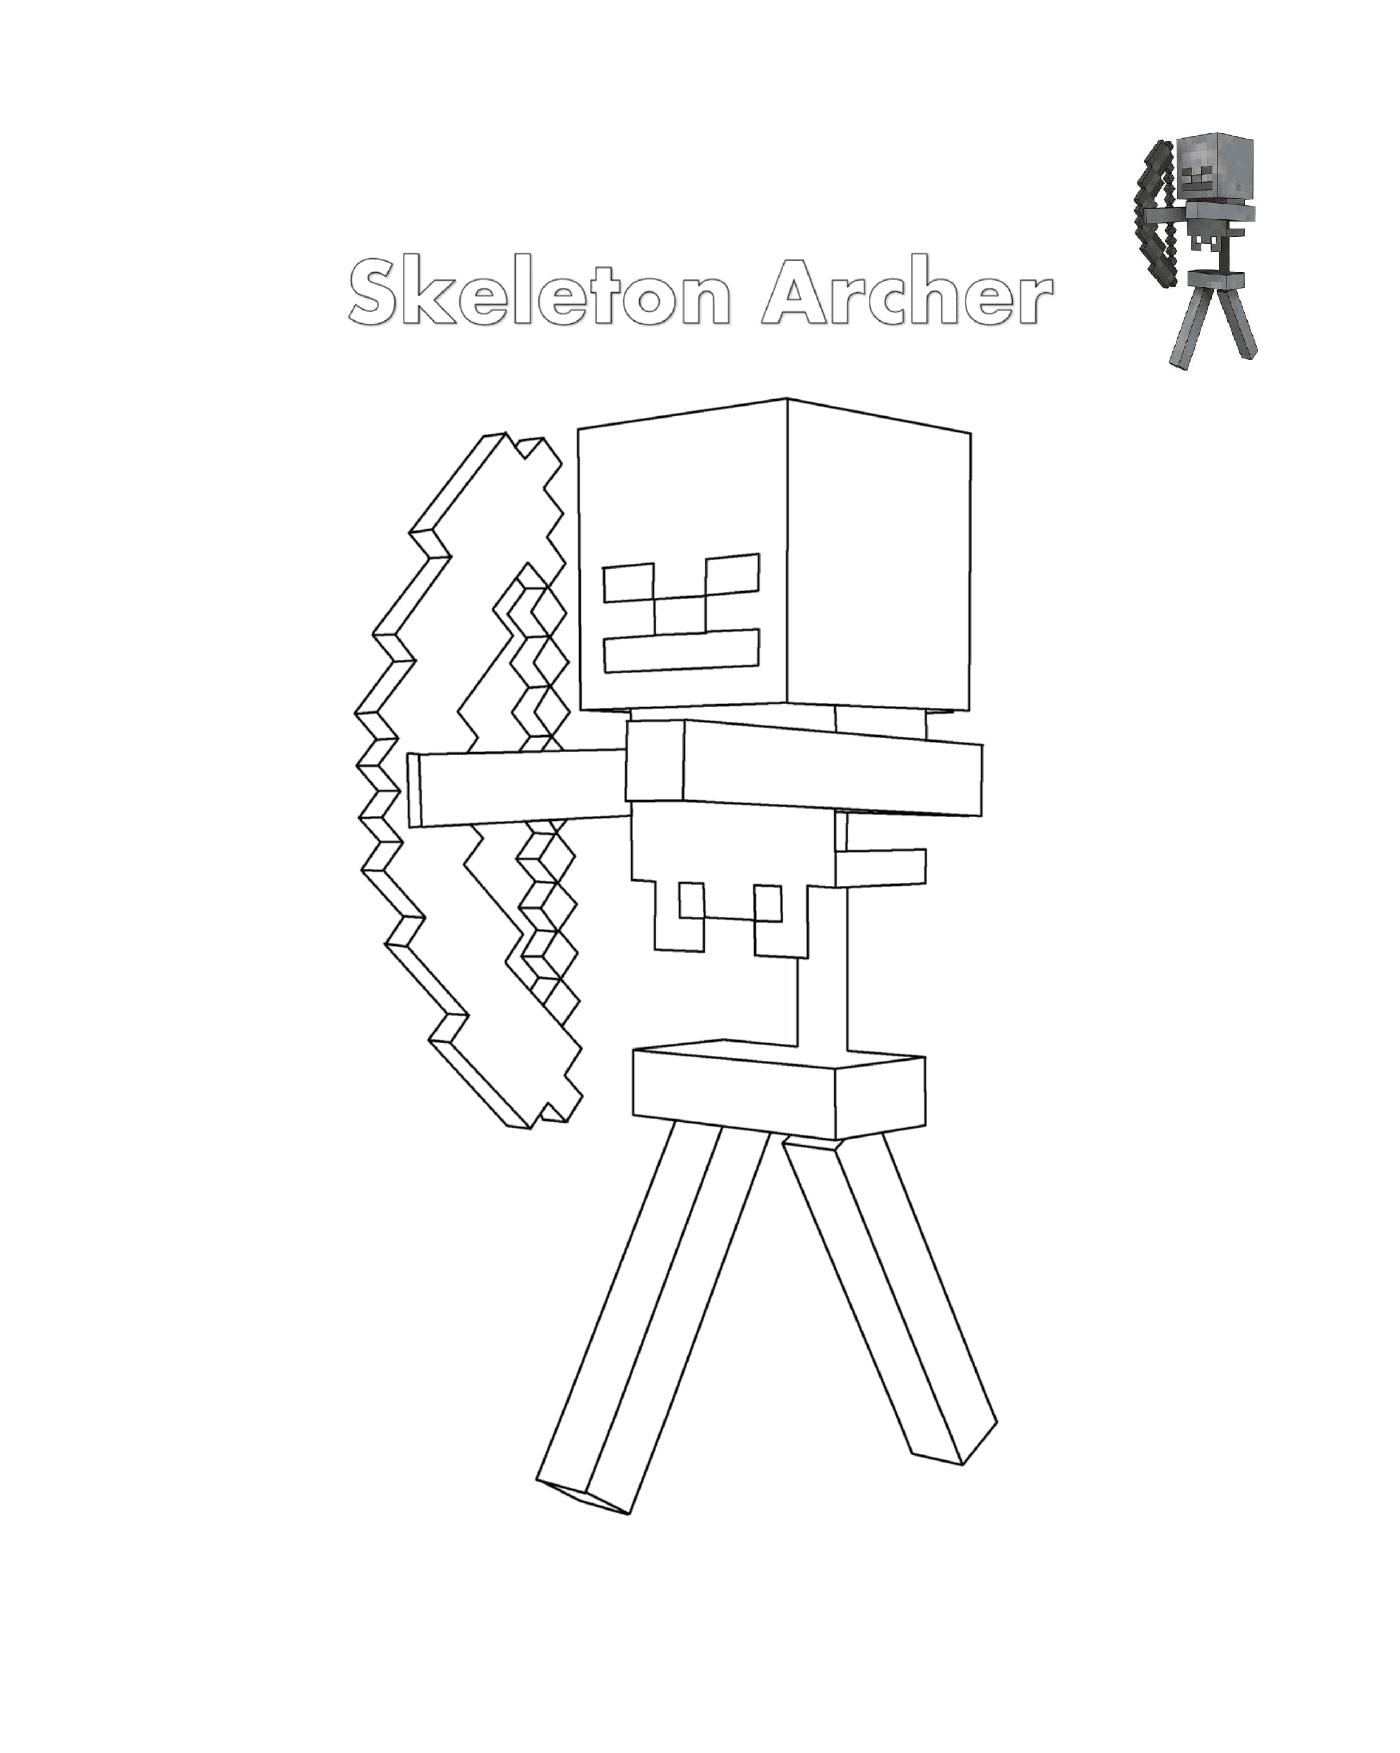  Esqueleto Archer Minecraft: un esqueleto de arquero 